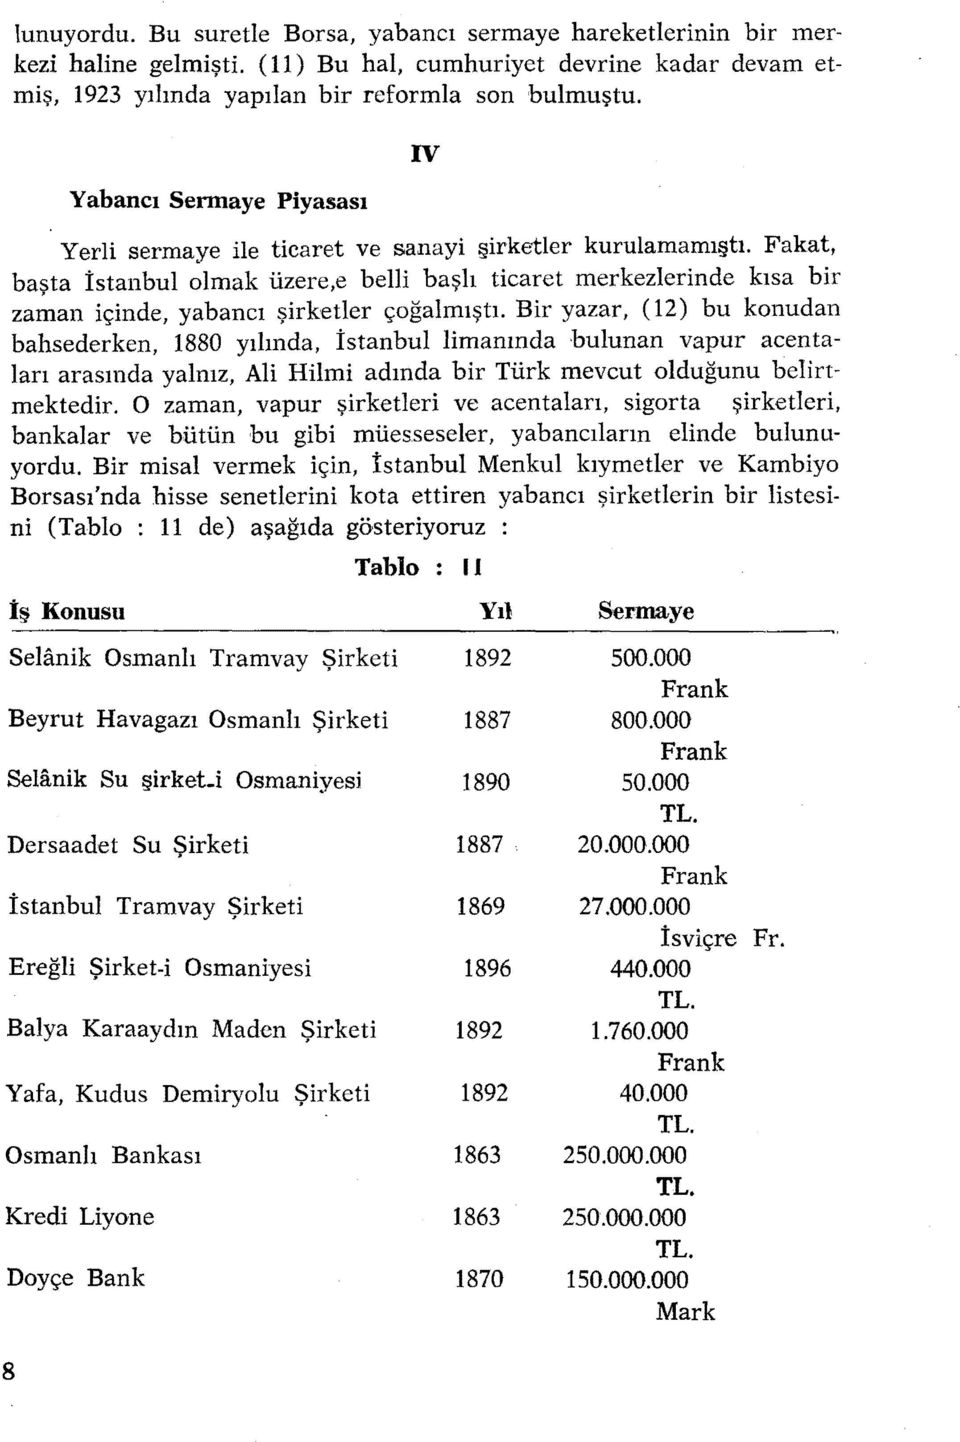 Fakat, basta, İstanbulolmak üzere,e belli başlı ticaret merkezlerinde kısa bir zaman içinde, yabancı şirketler çoğalmıştı.